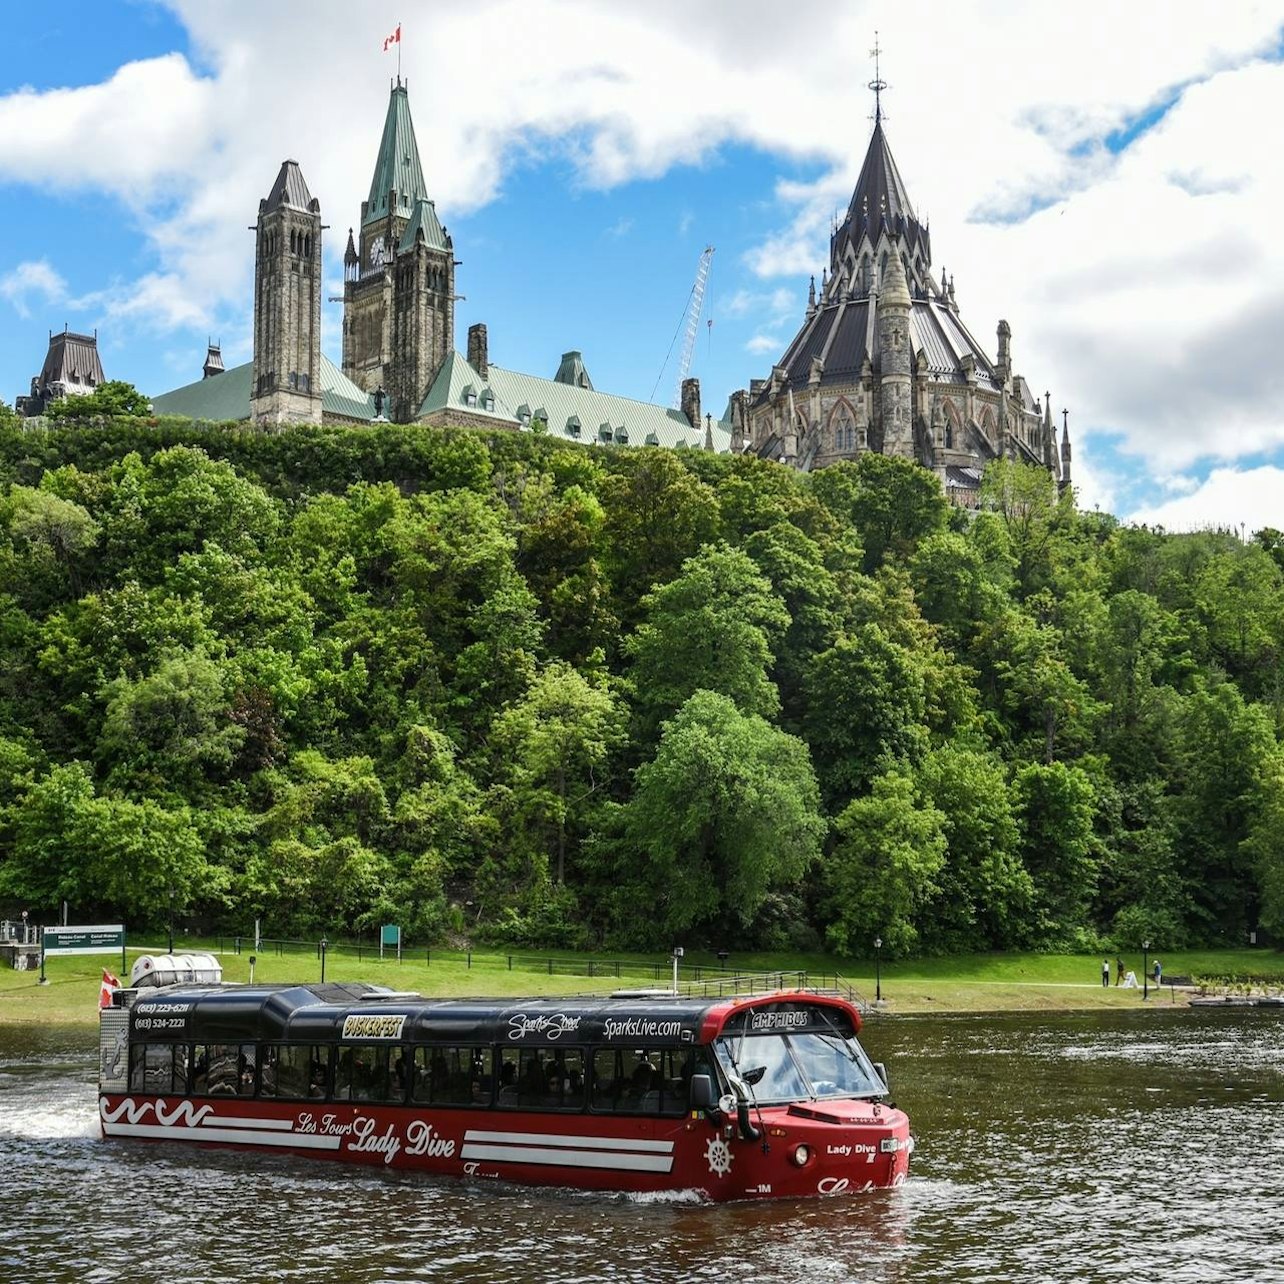 Ottawa City Tour: Amphibus - Accommodations in Ottawa